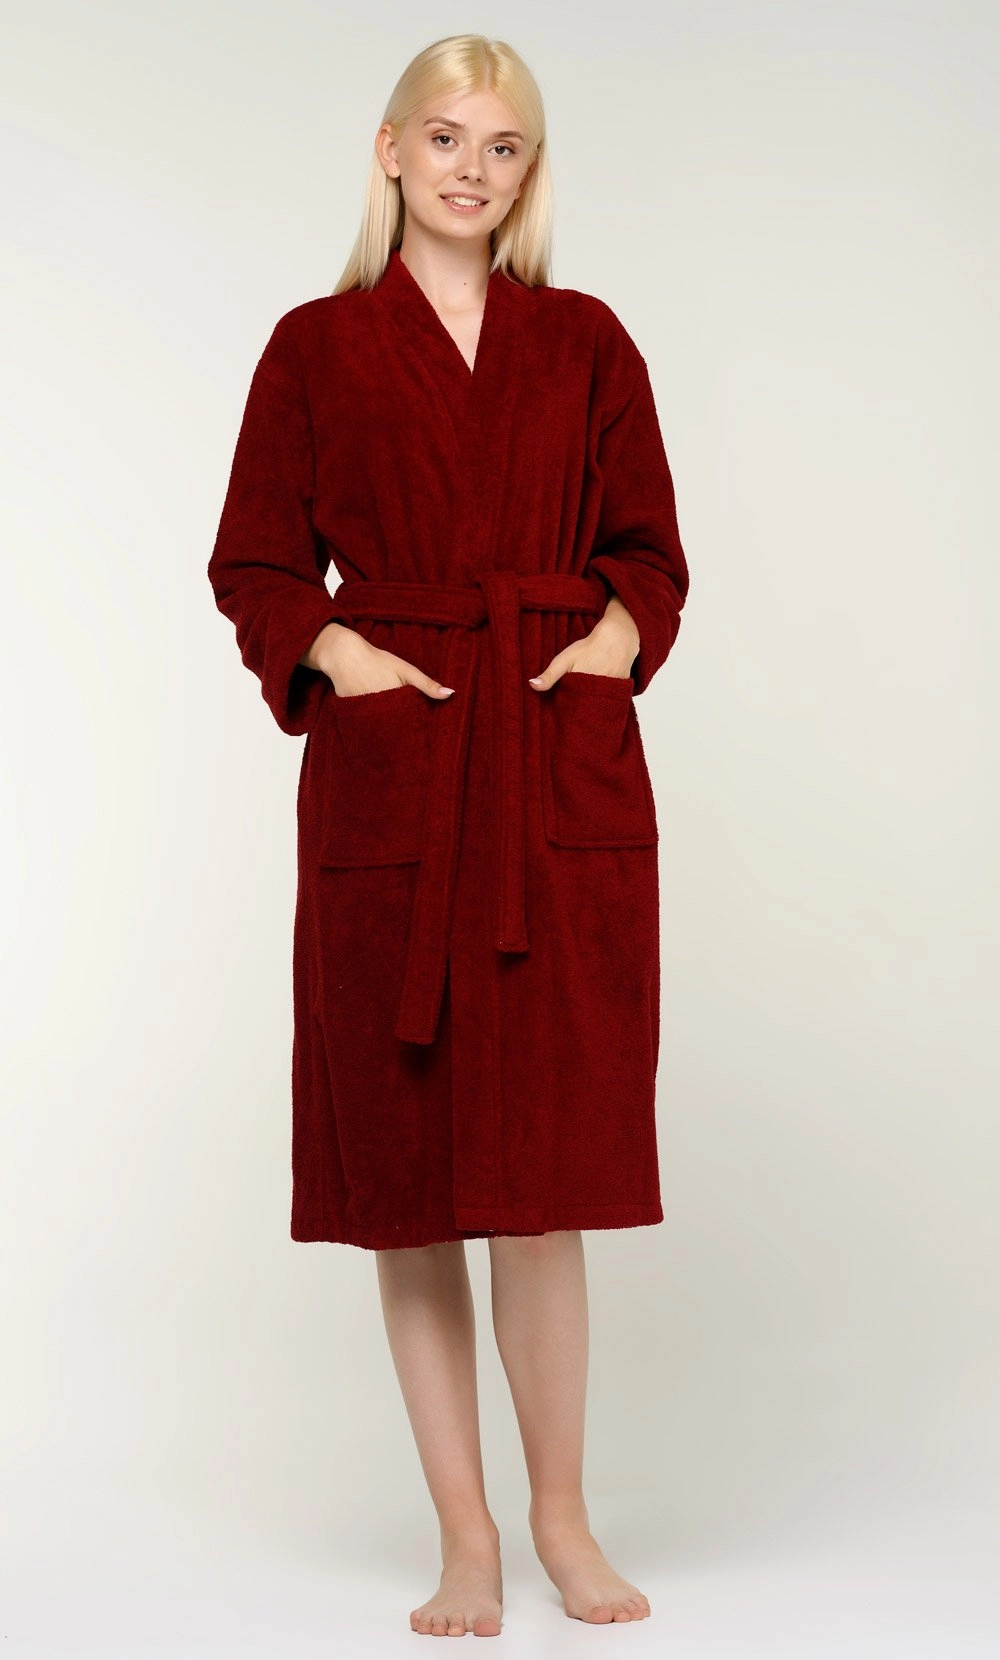 Women's :: Cotton Robes :: 100% Turkish Cotton Wine Red Terry Kimono  Bathrobe - Wholesale bathrobes, Spa robes, Kids robes, Cotton robes, Spa  Slippers, Wholesale Towels